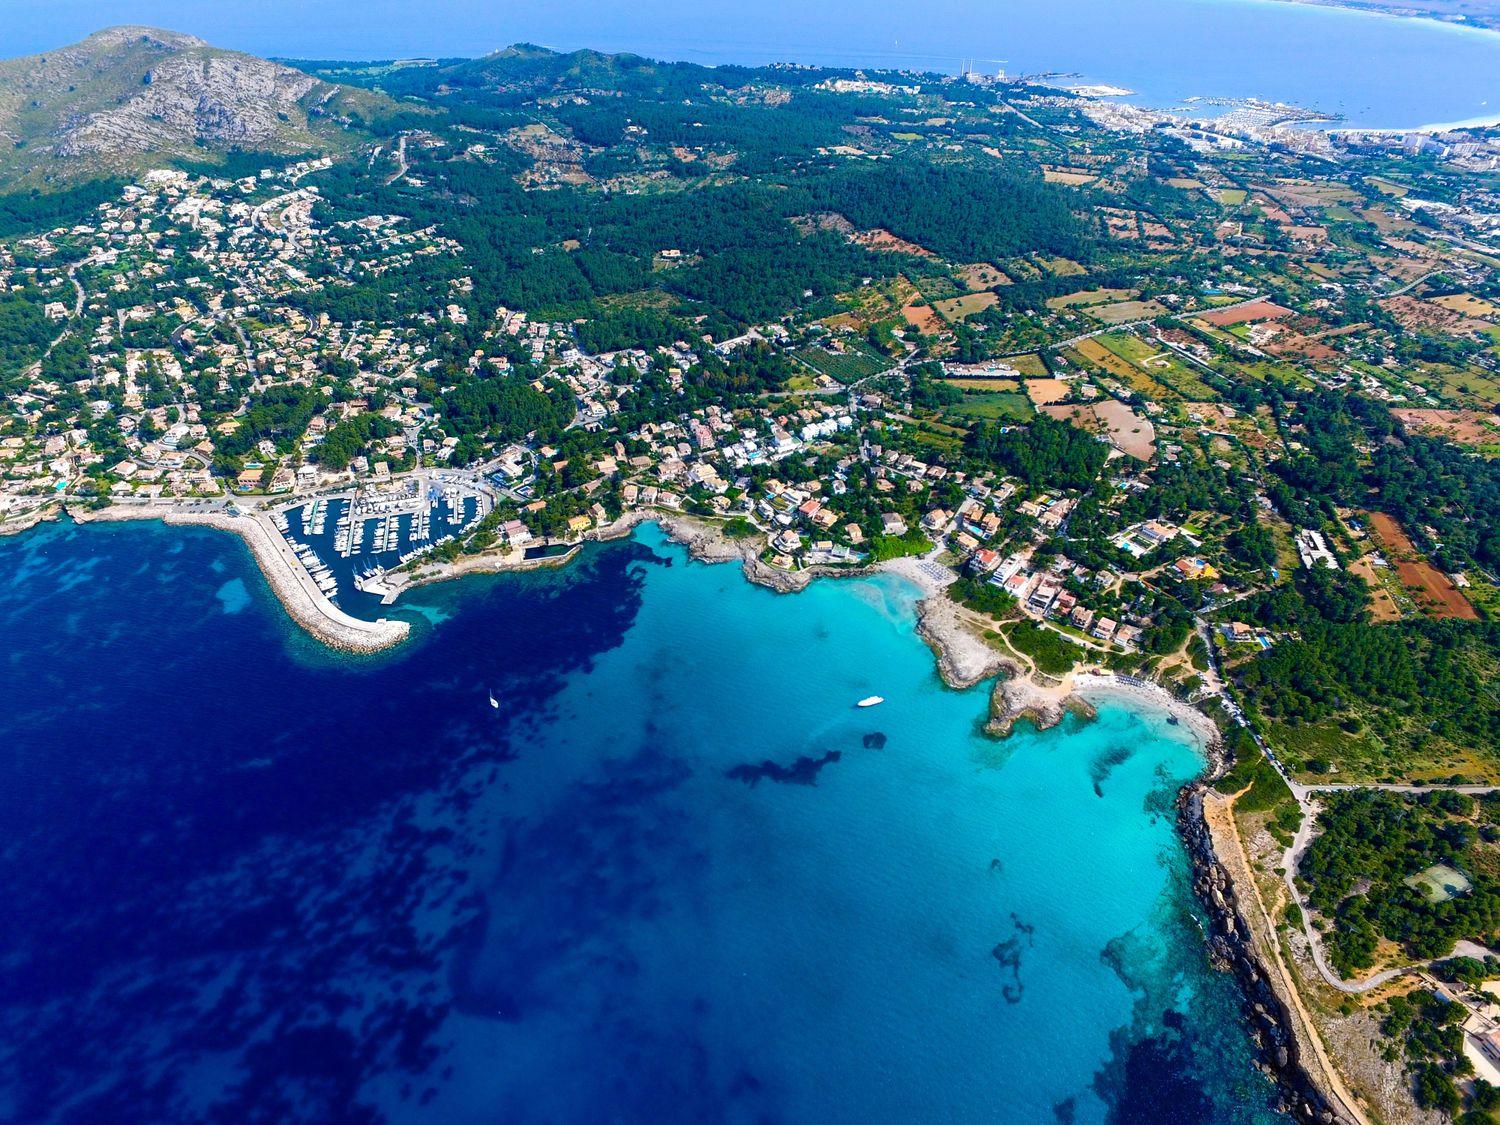 Blick von oben auf grünes Mallorca mit Hafenstädten, das blaue Meer und Yachten